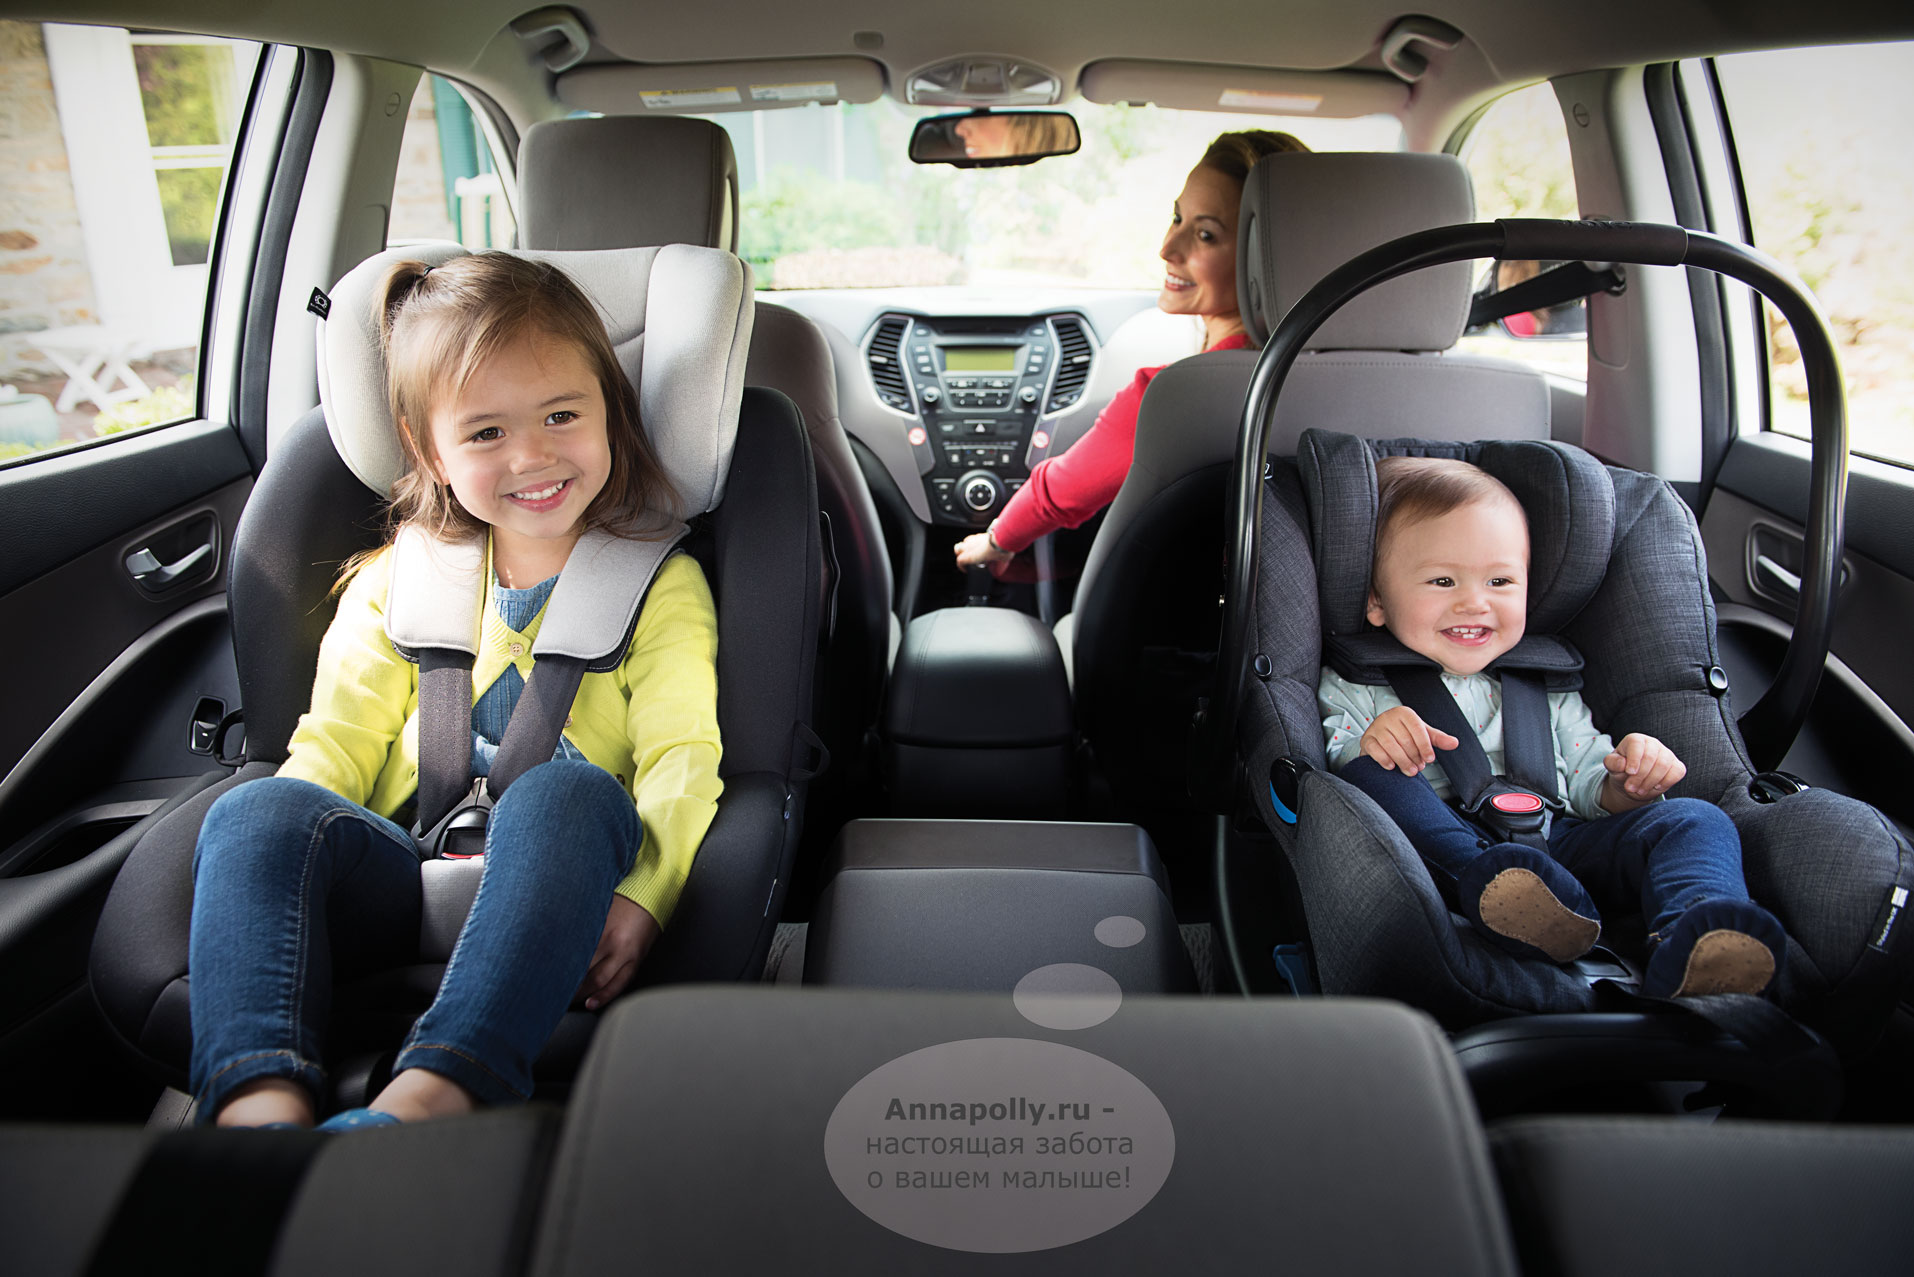 На пассажирском сидении автомобиля. Автокресло для детей. Автокресло для детей в машине. Кресло для детей в машину. Ребенок в автокресле.